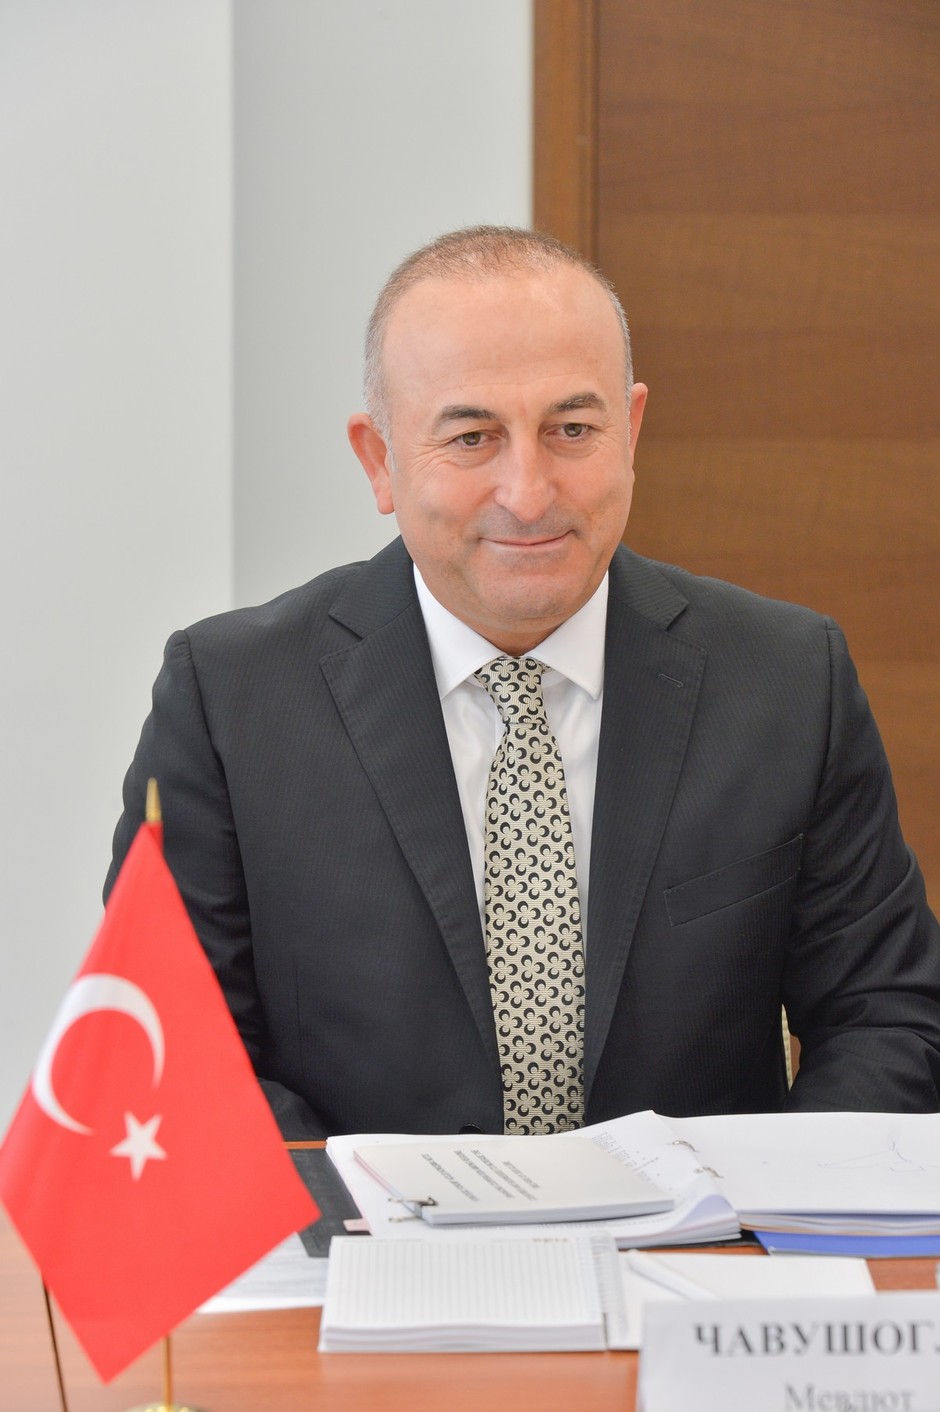 5 июня 2014 года. Визит министра Турецкой Республики по делам ЕС Мевлюта Чавушоглу